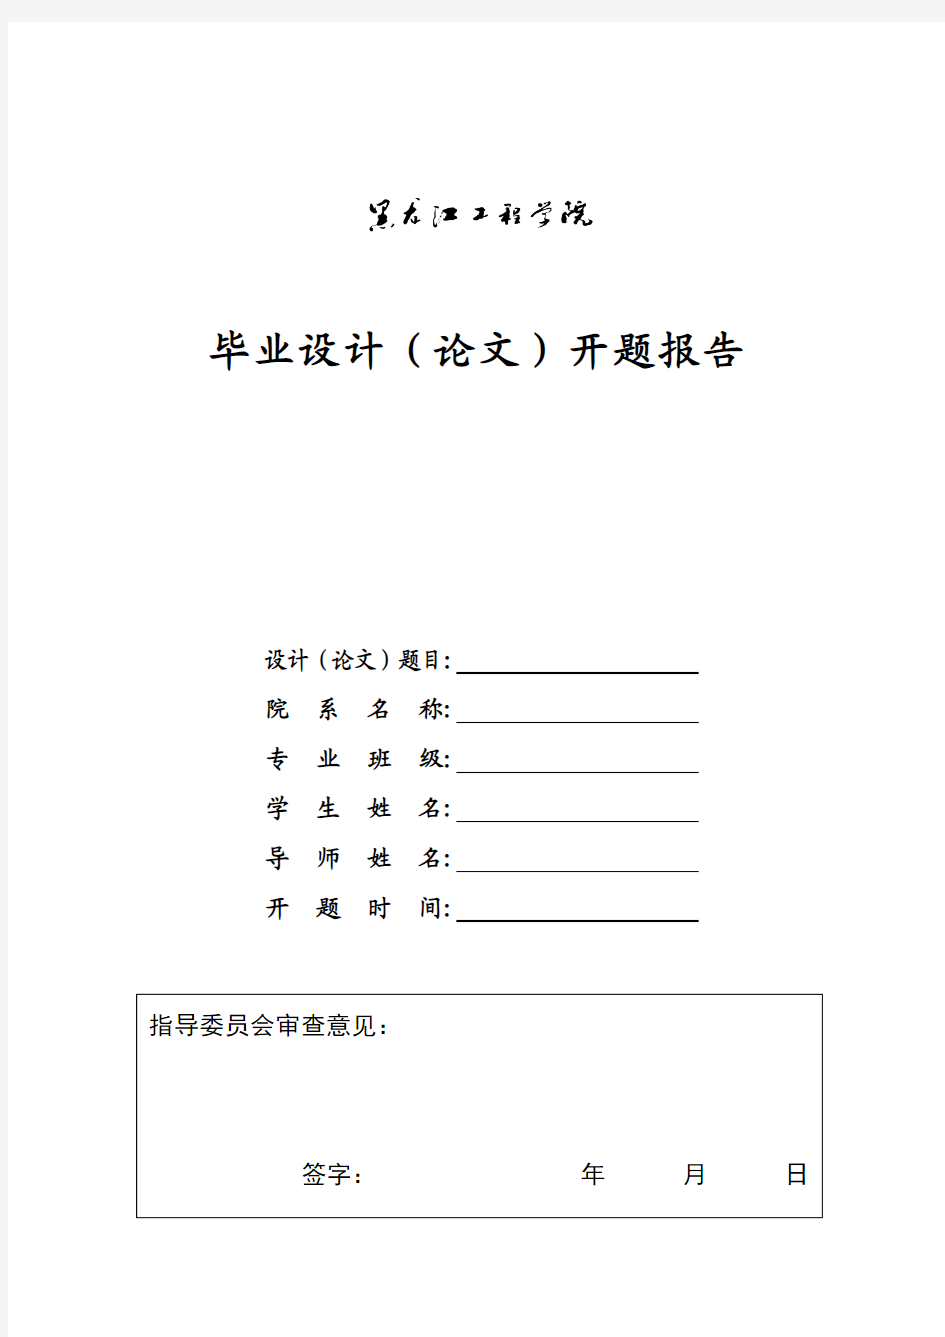 新黑龙江工程学院毕业设计(论文)开题报告